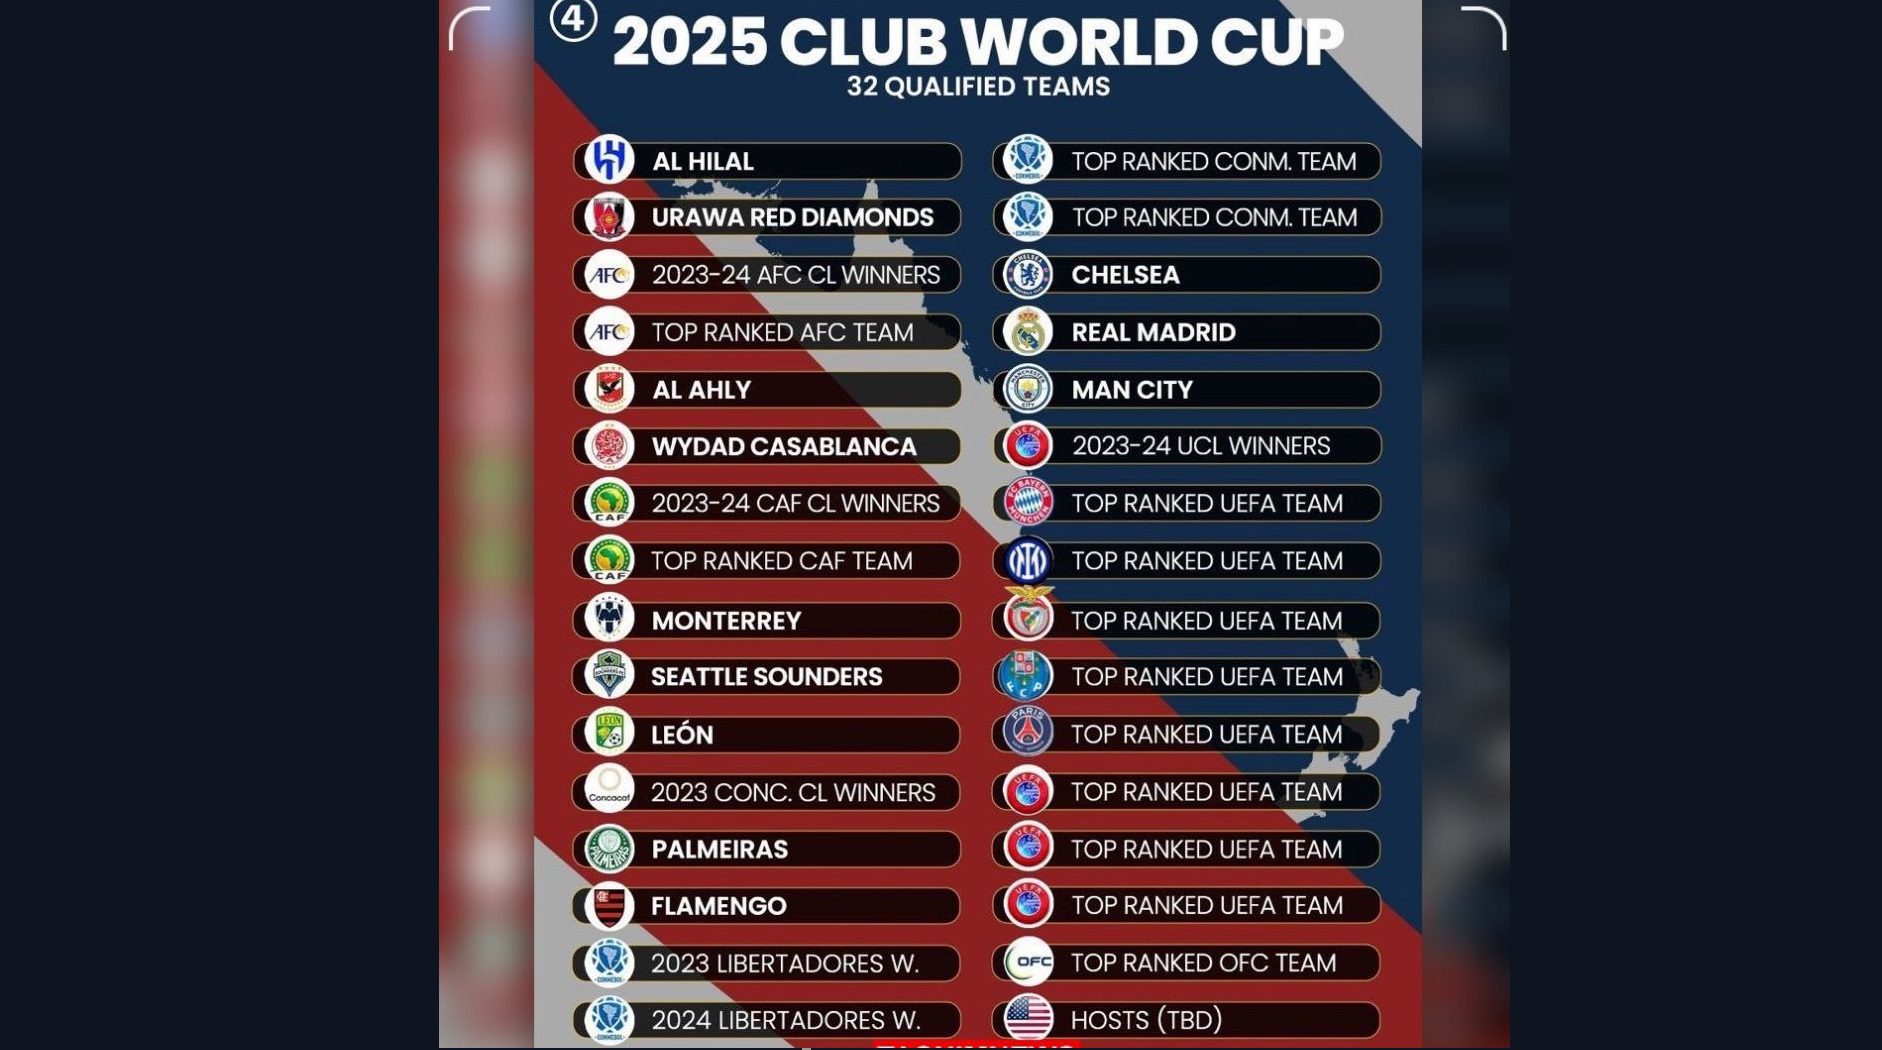 ورژن جدید جام باشگاه‌های جهان - جام باشگاه‌های جهان با فرمت جدید 32 تیمی قرار است یک سال پیش از جام جهانی 2026 برگزار شود.